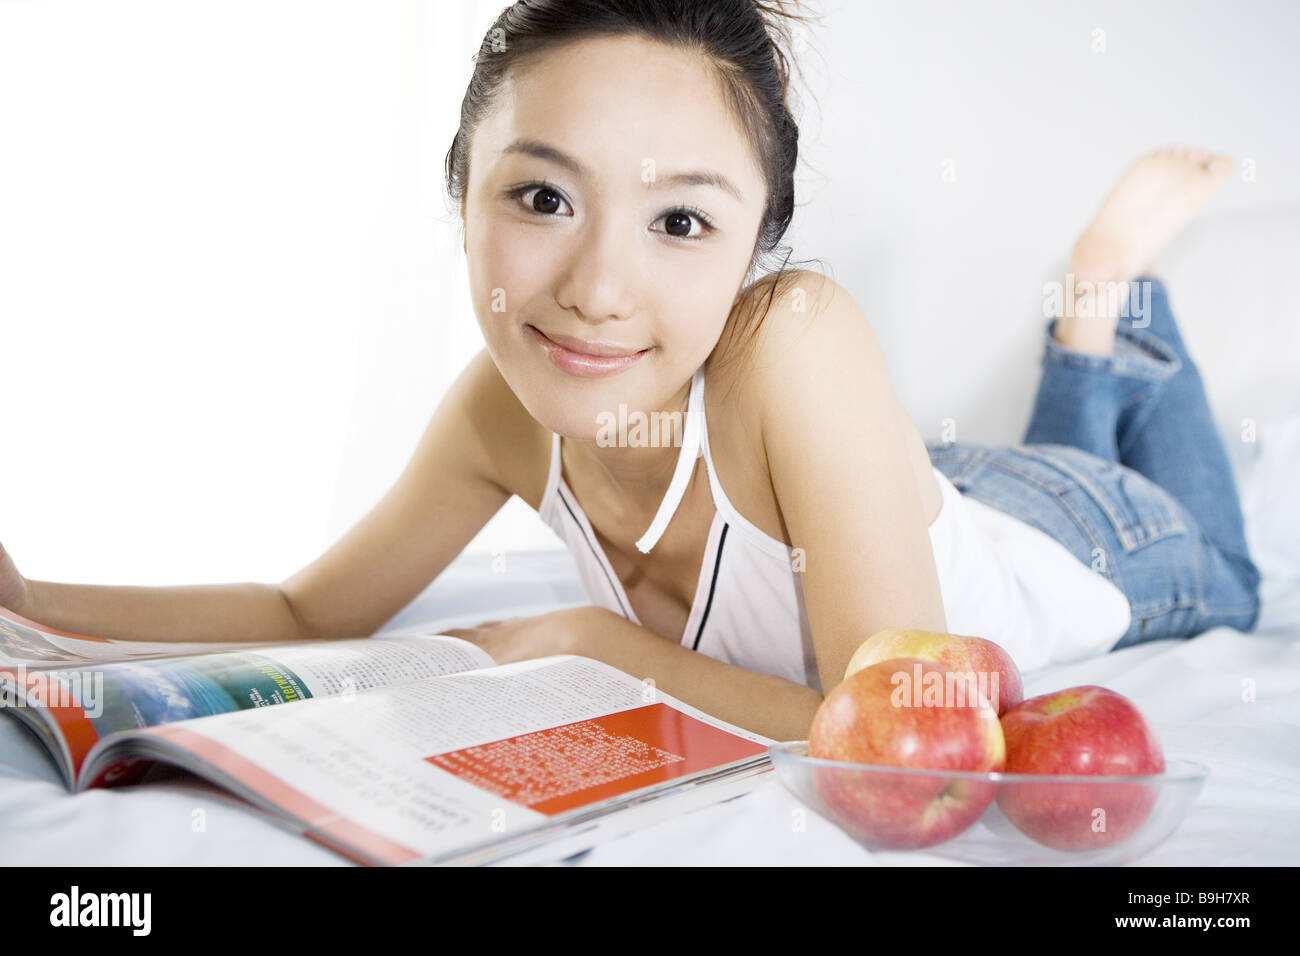 Una giovane donna giaceva sul letto con la rivista e le mele ritratto sorridente Foto Stock